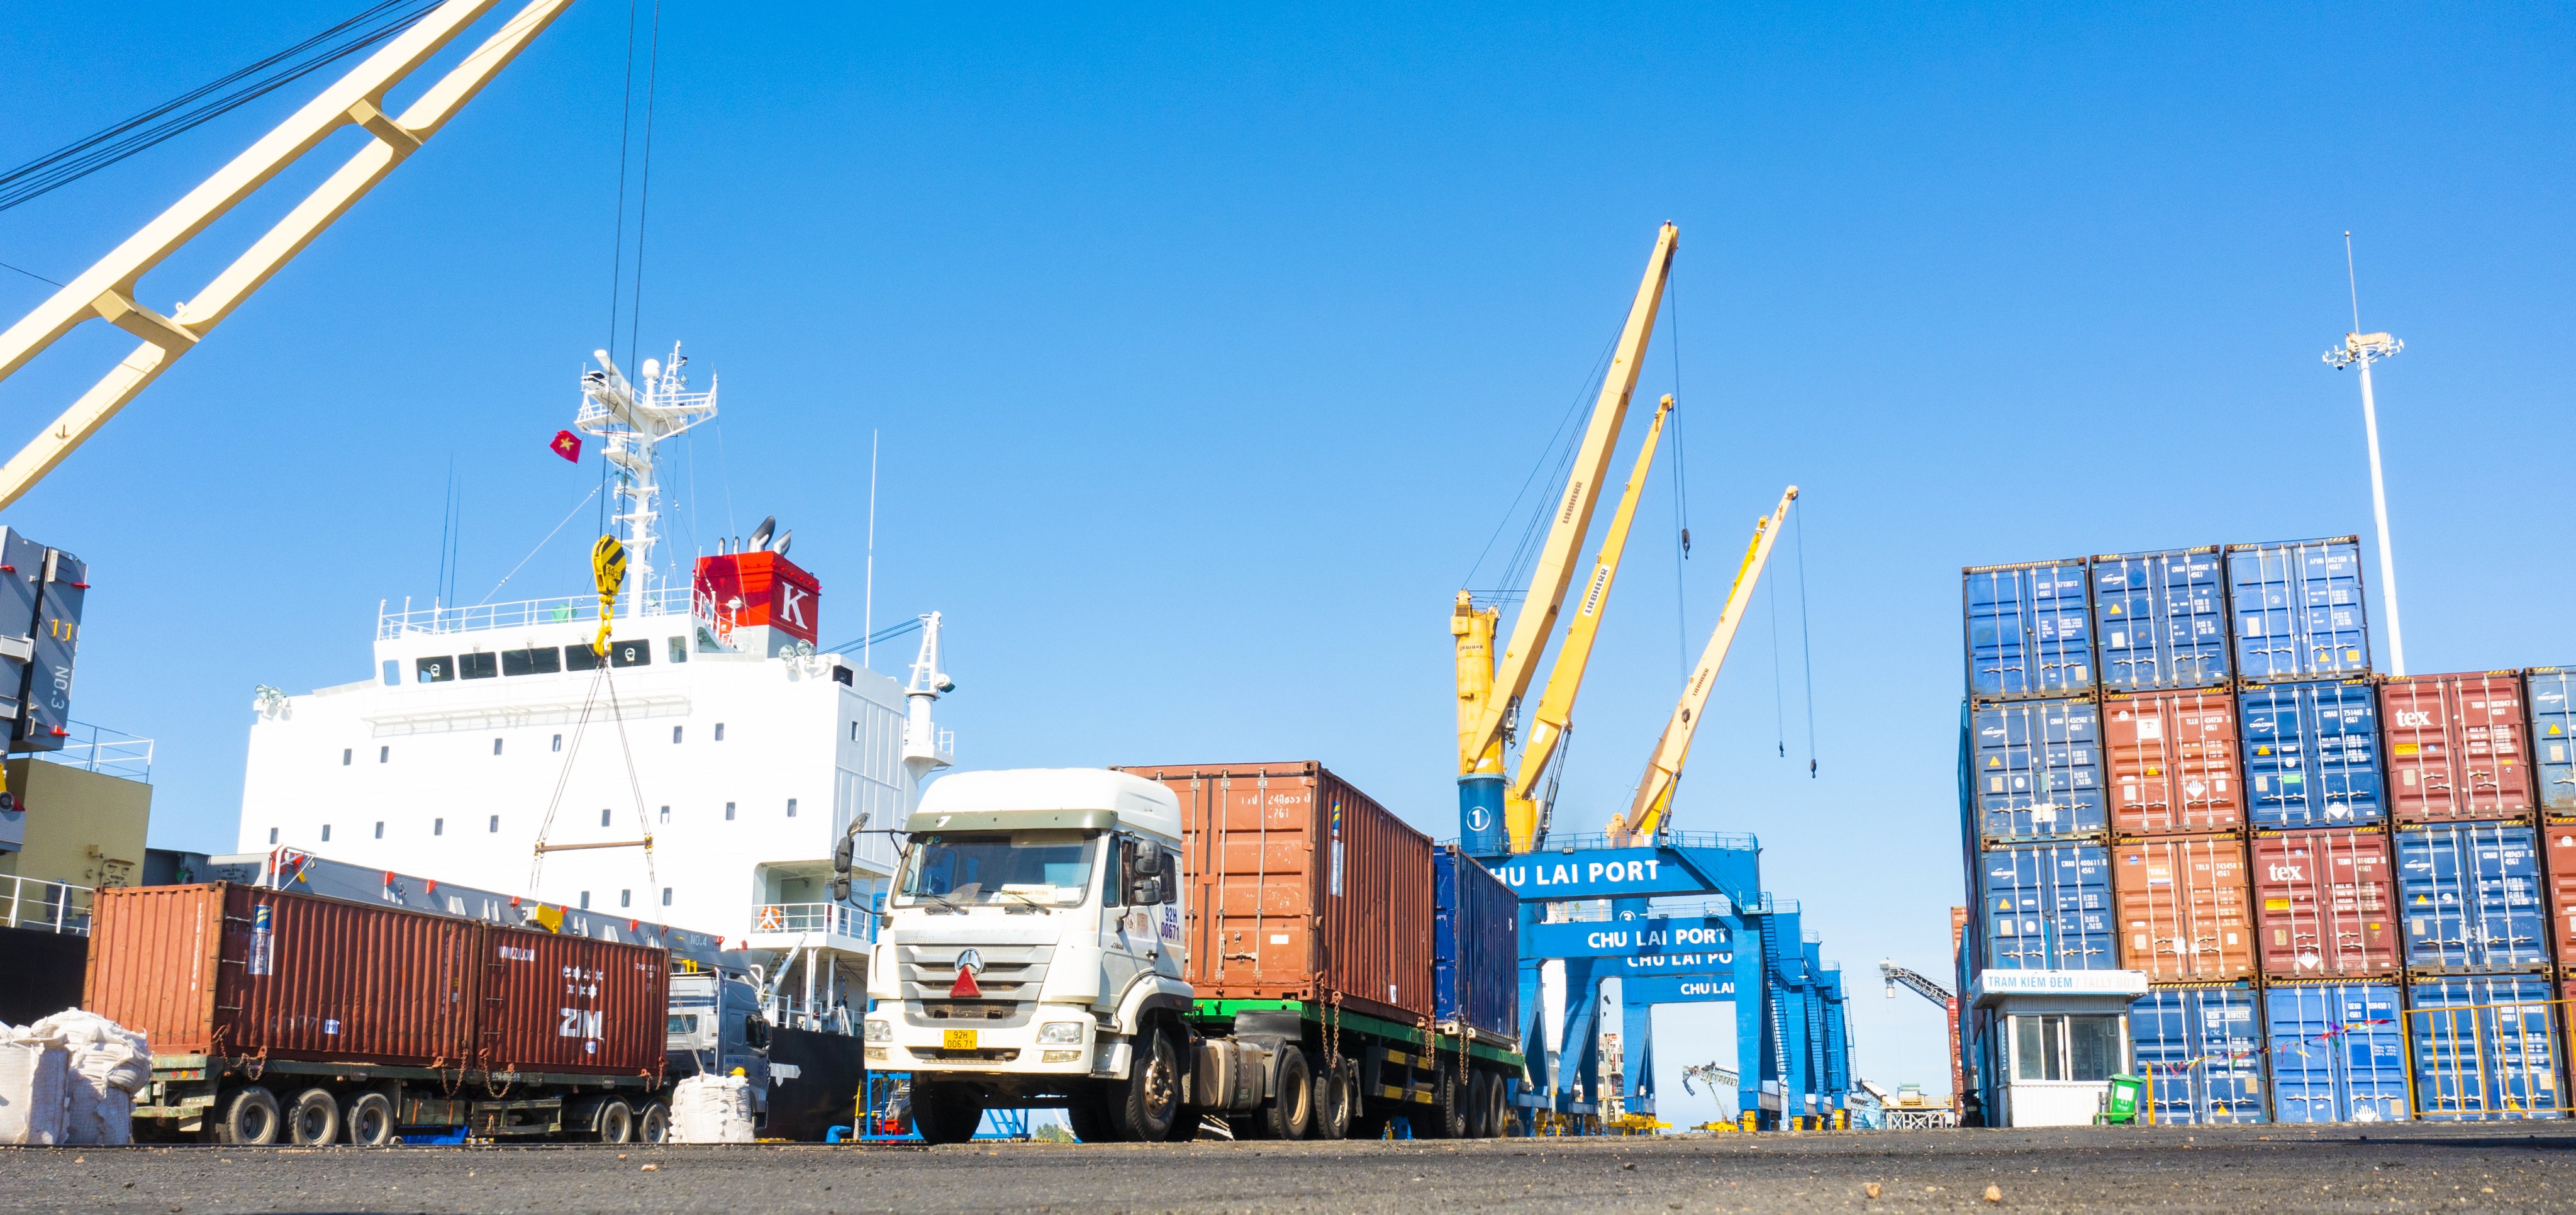 Kinh tế - Đầu tư bến cảng 5 vạn tấn tạo đà phát triển dịch vụ logistics tại miền Trung (Hình 2).